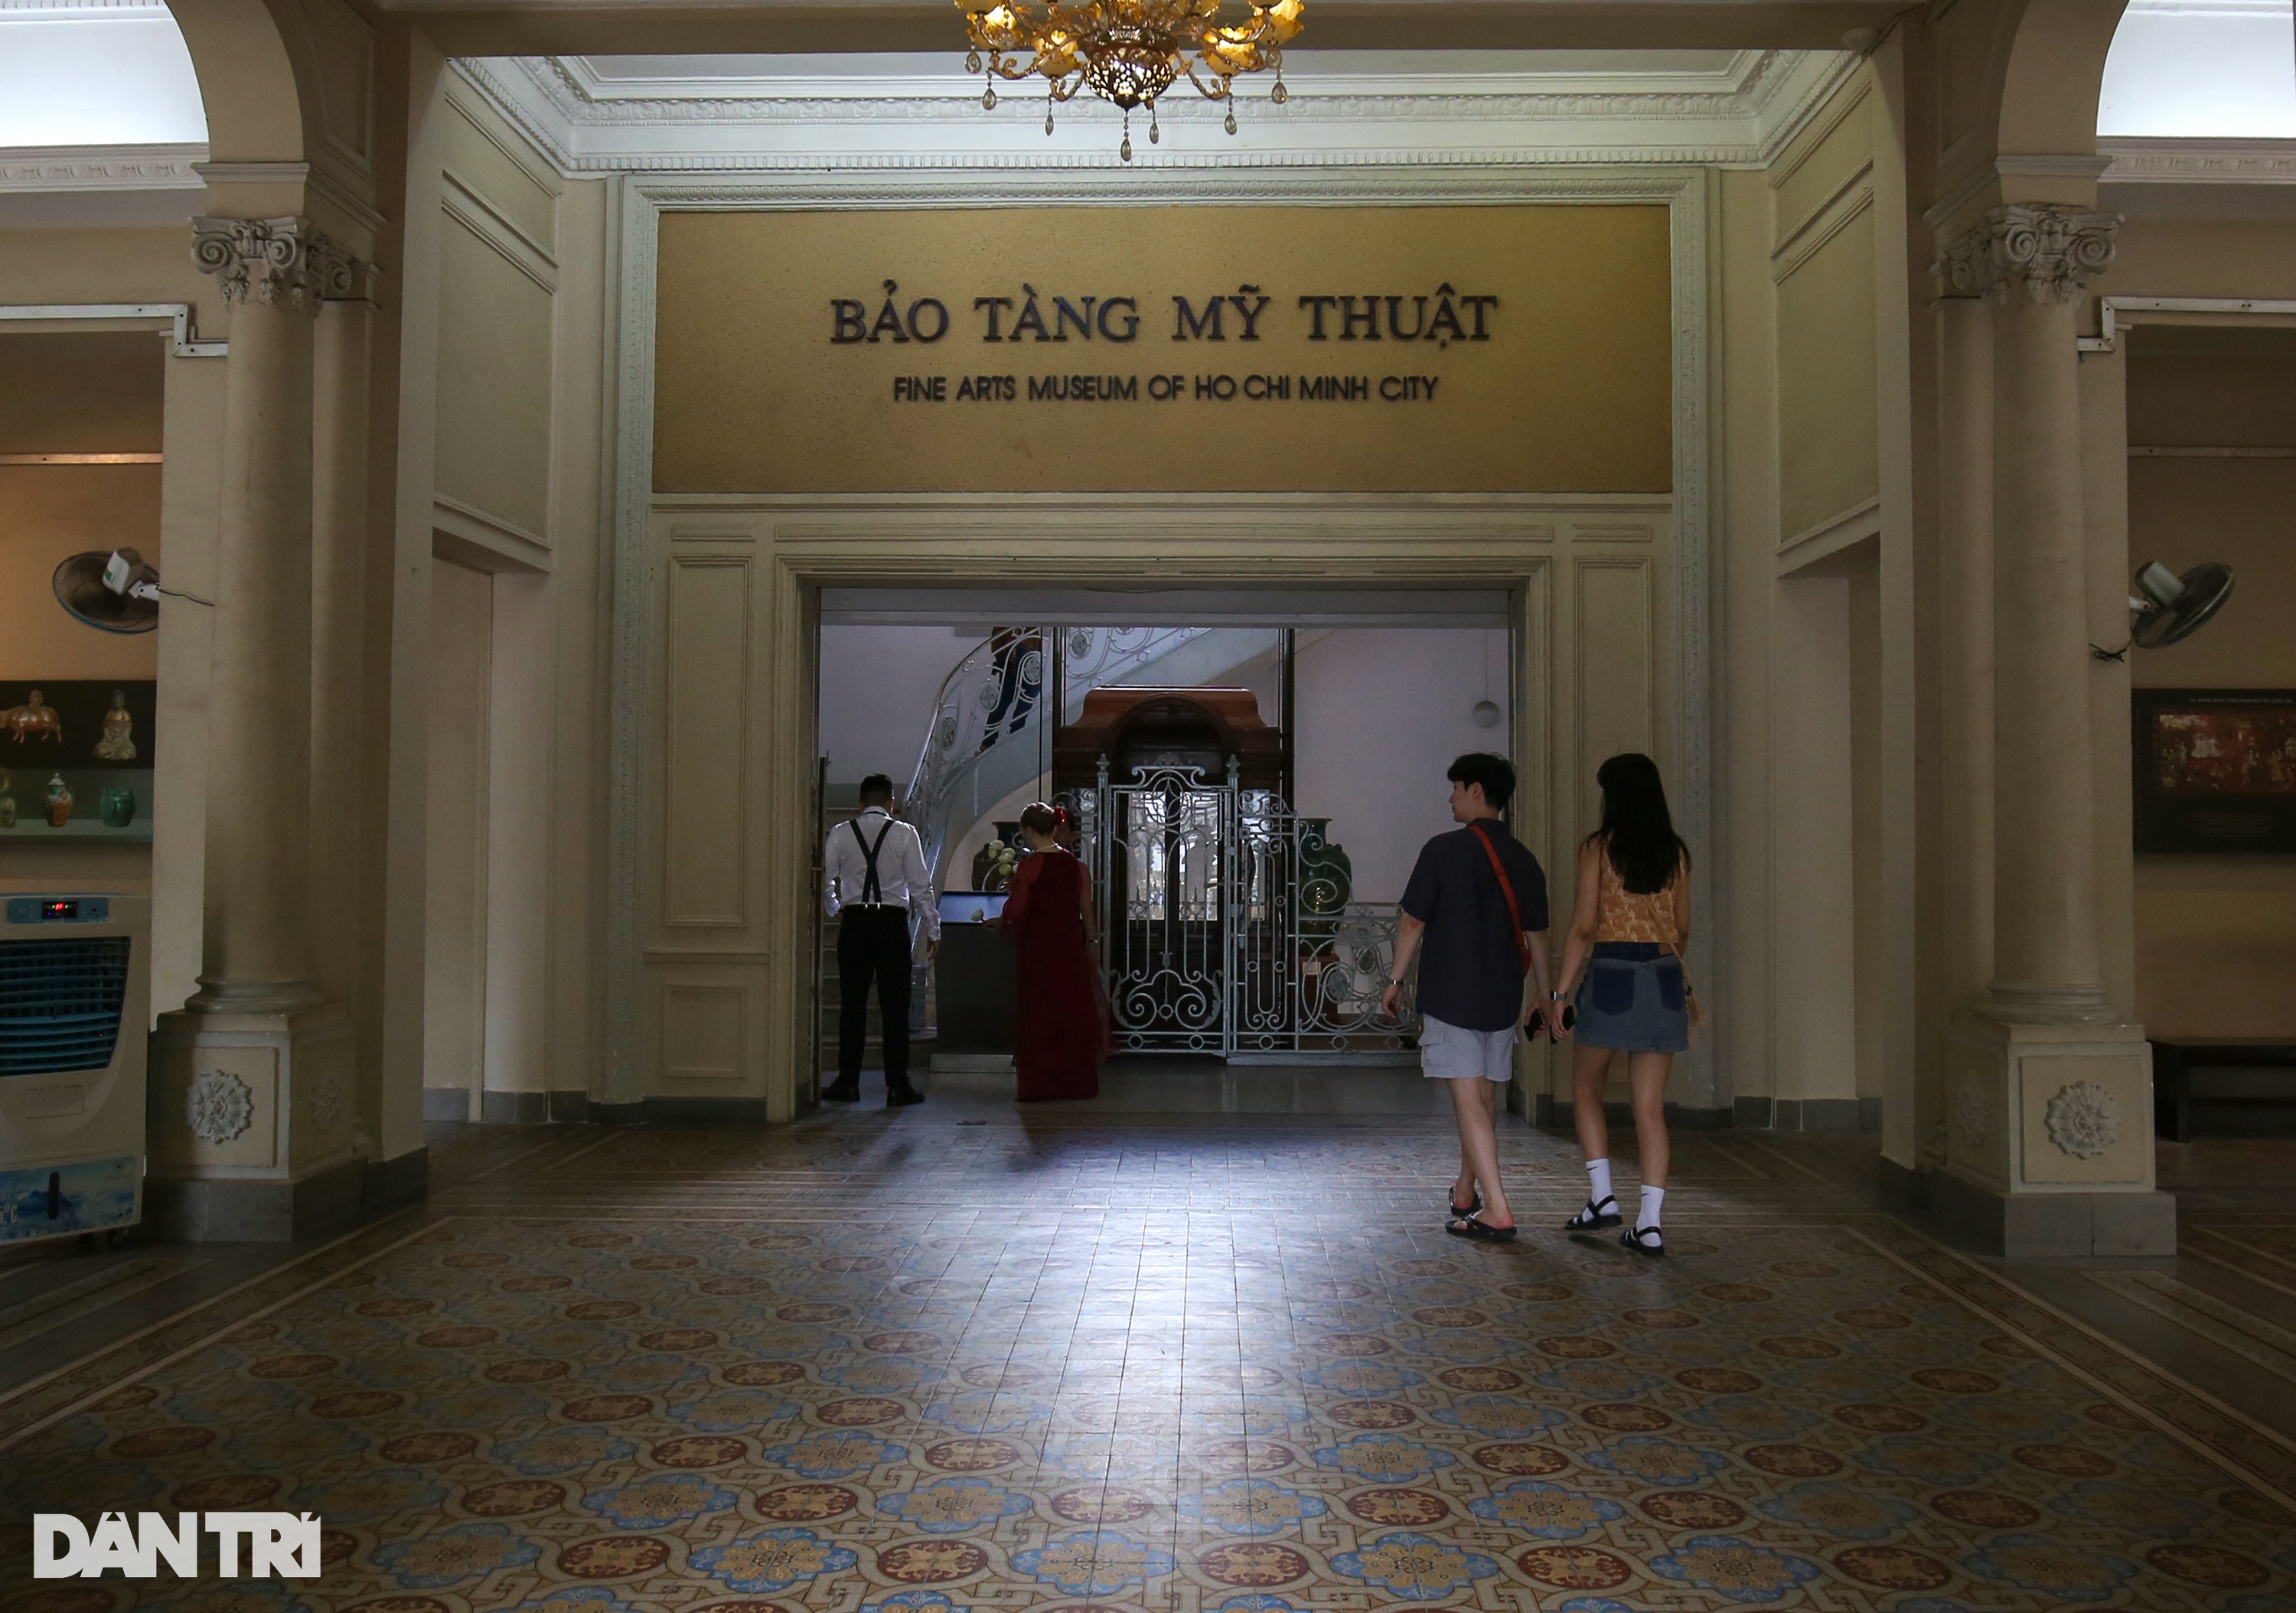 Bảo tàng Mỹ thuật TPHCM xuống cấp sau gần 100 năm xây dựng - 3